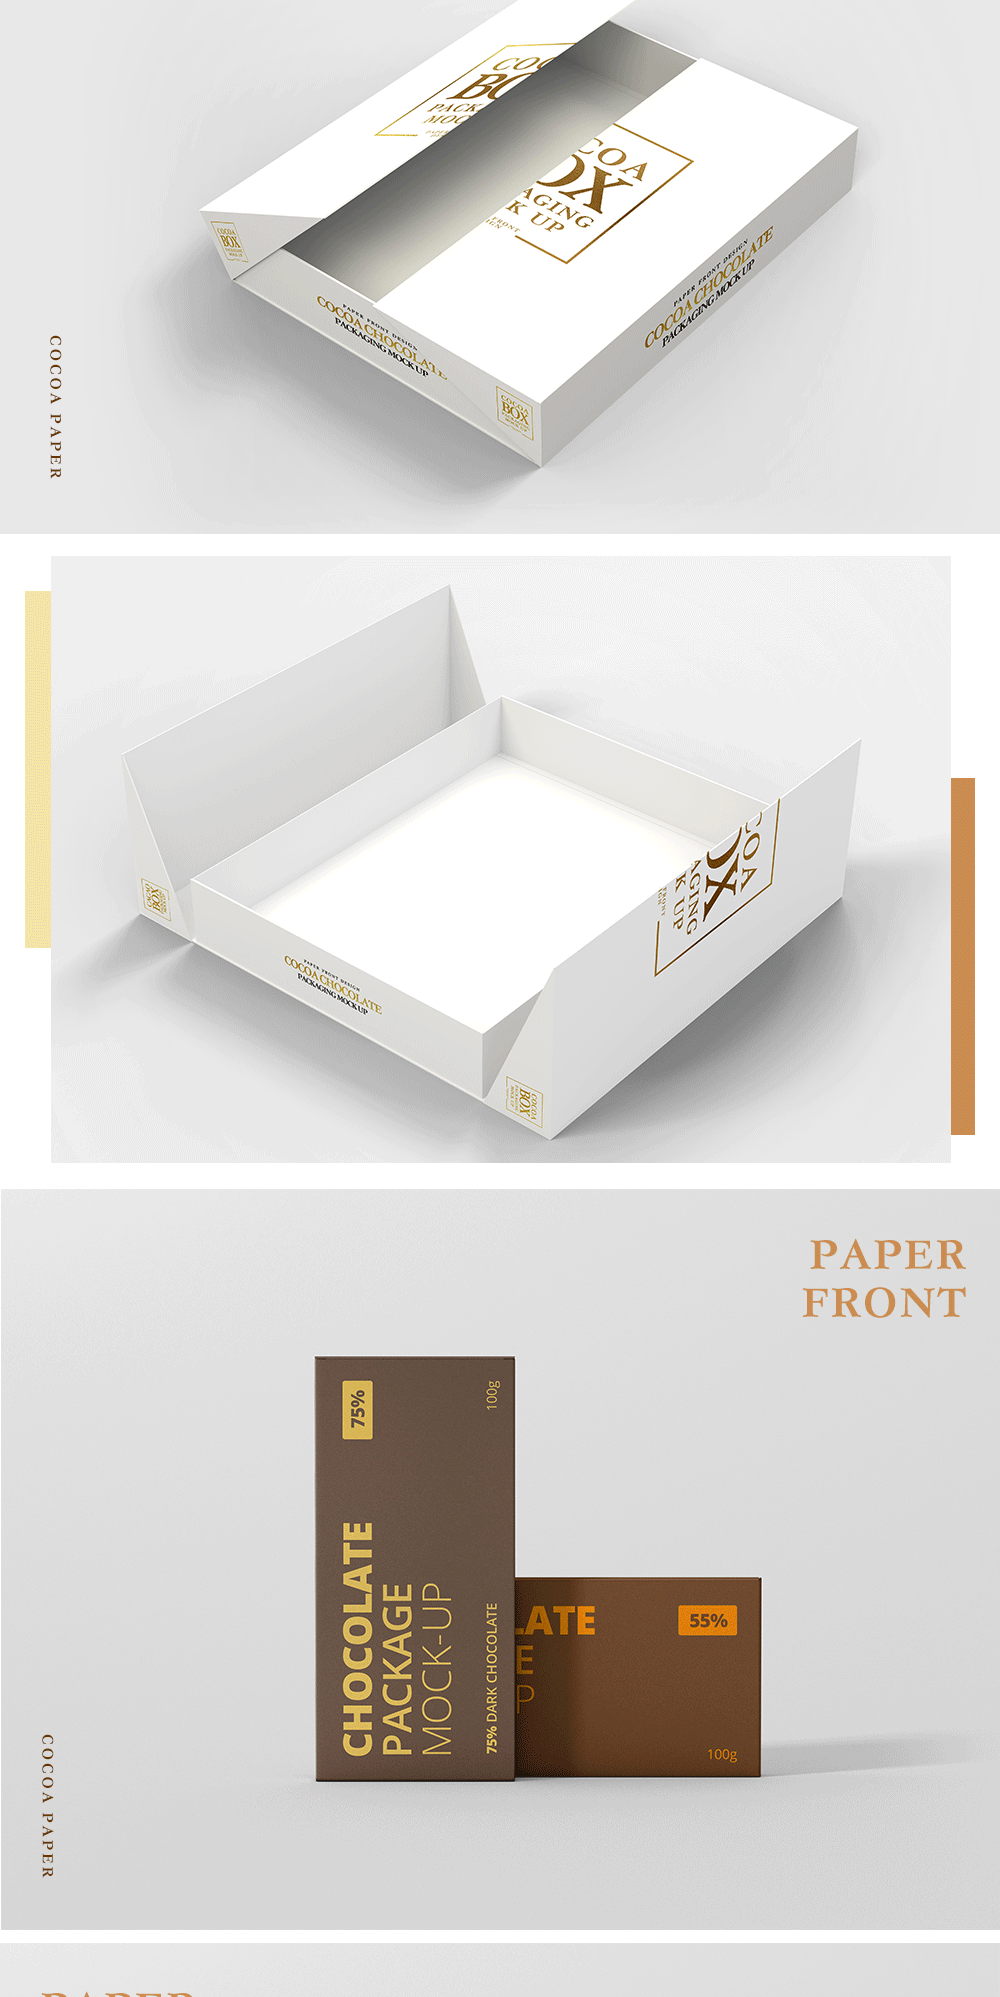 进口艺术特种纸可可再生纸食用级环保再生纸大地色系